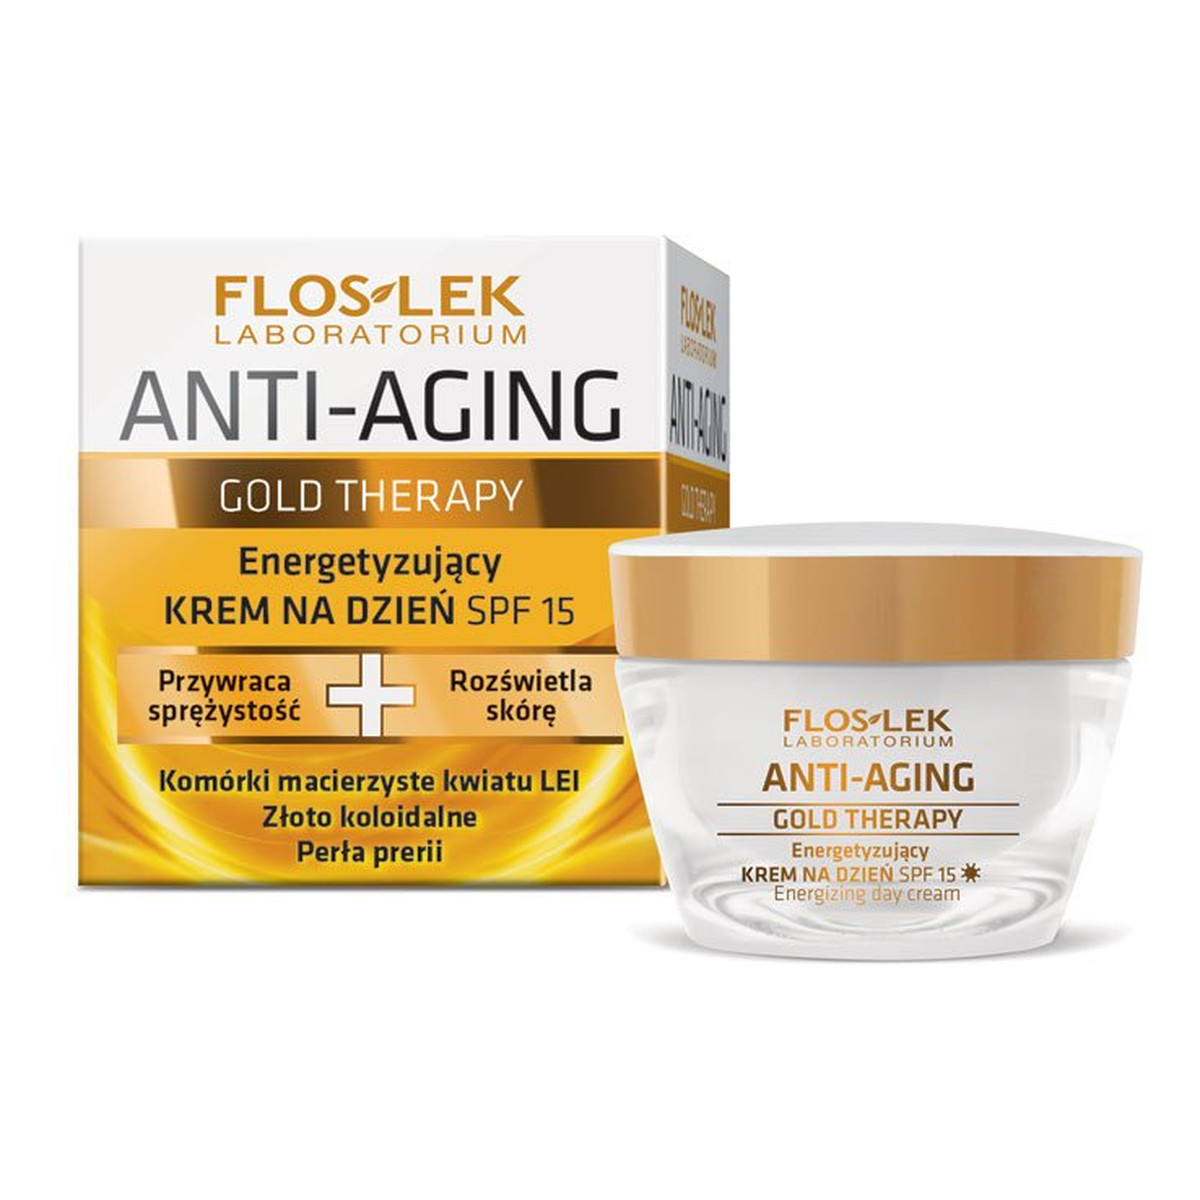 FlosLek Anti-Aging Gold Therapy Energetyzujący Krem Na Dzień SPF 15 50ml